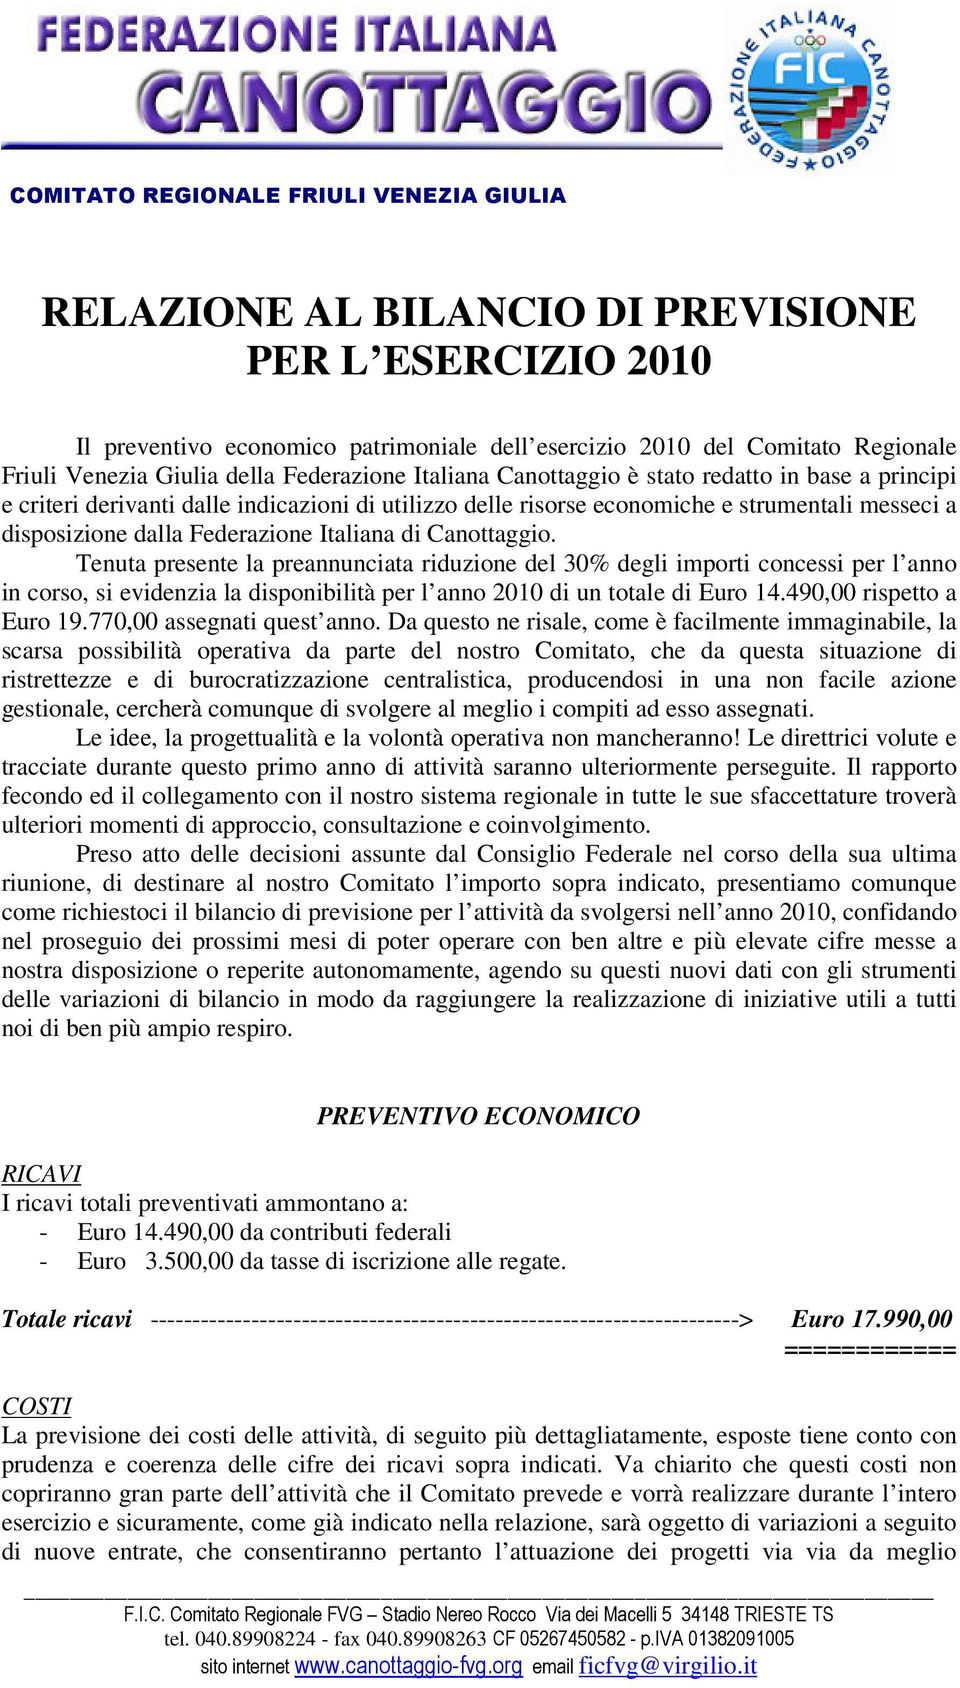 Federazione Italiana di Canottaggio.